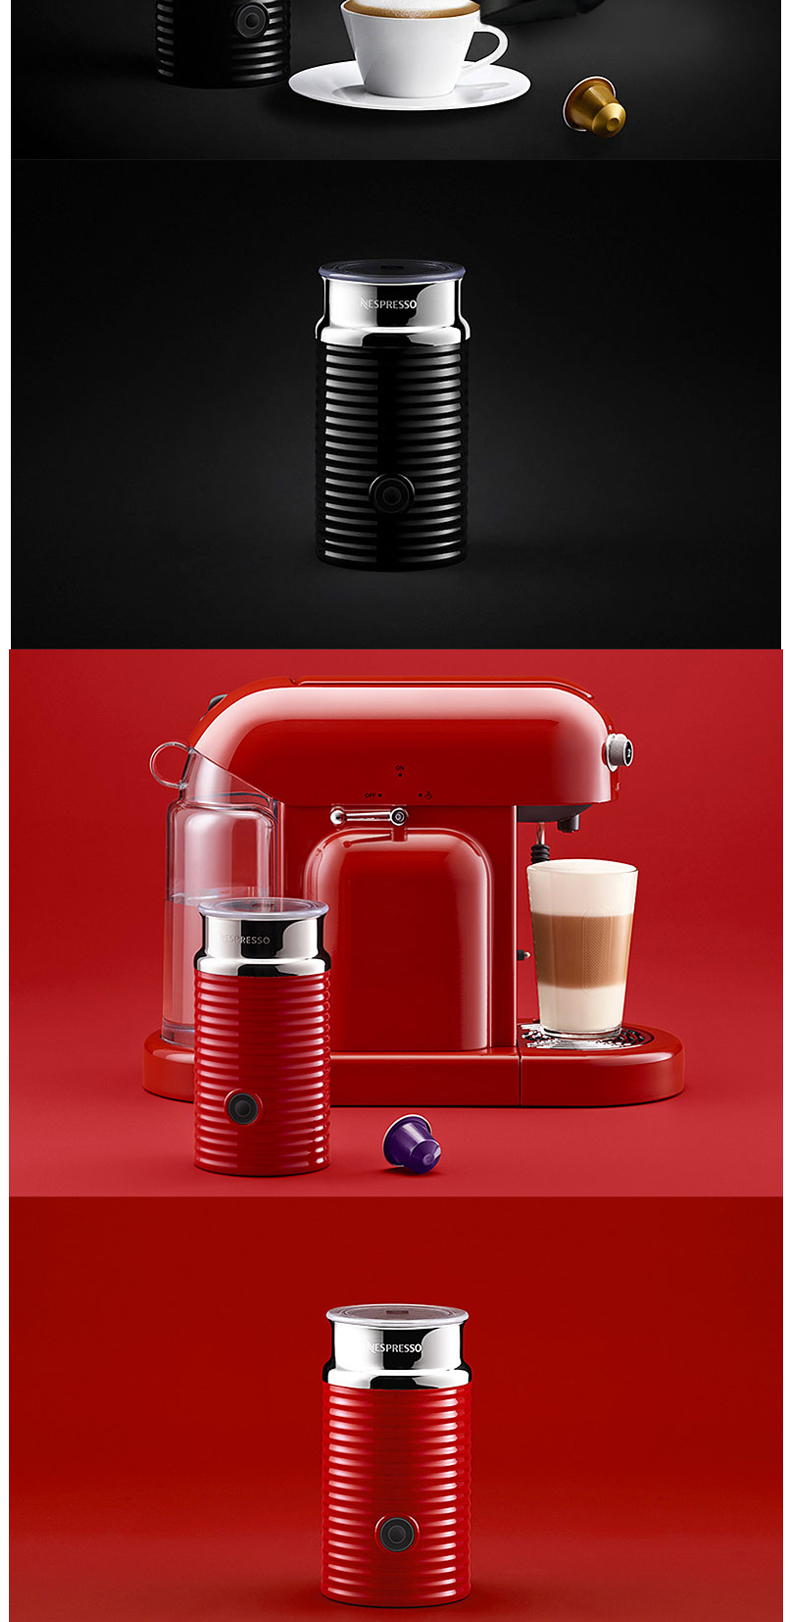 奈斯派索 Nespresso Aeroccino 3 全自动奶泡机 (黑色)